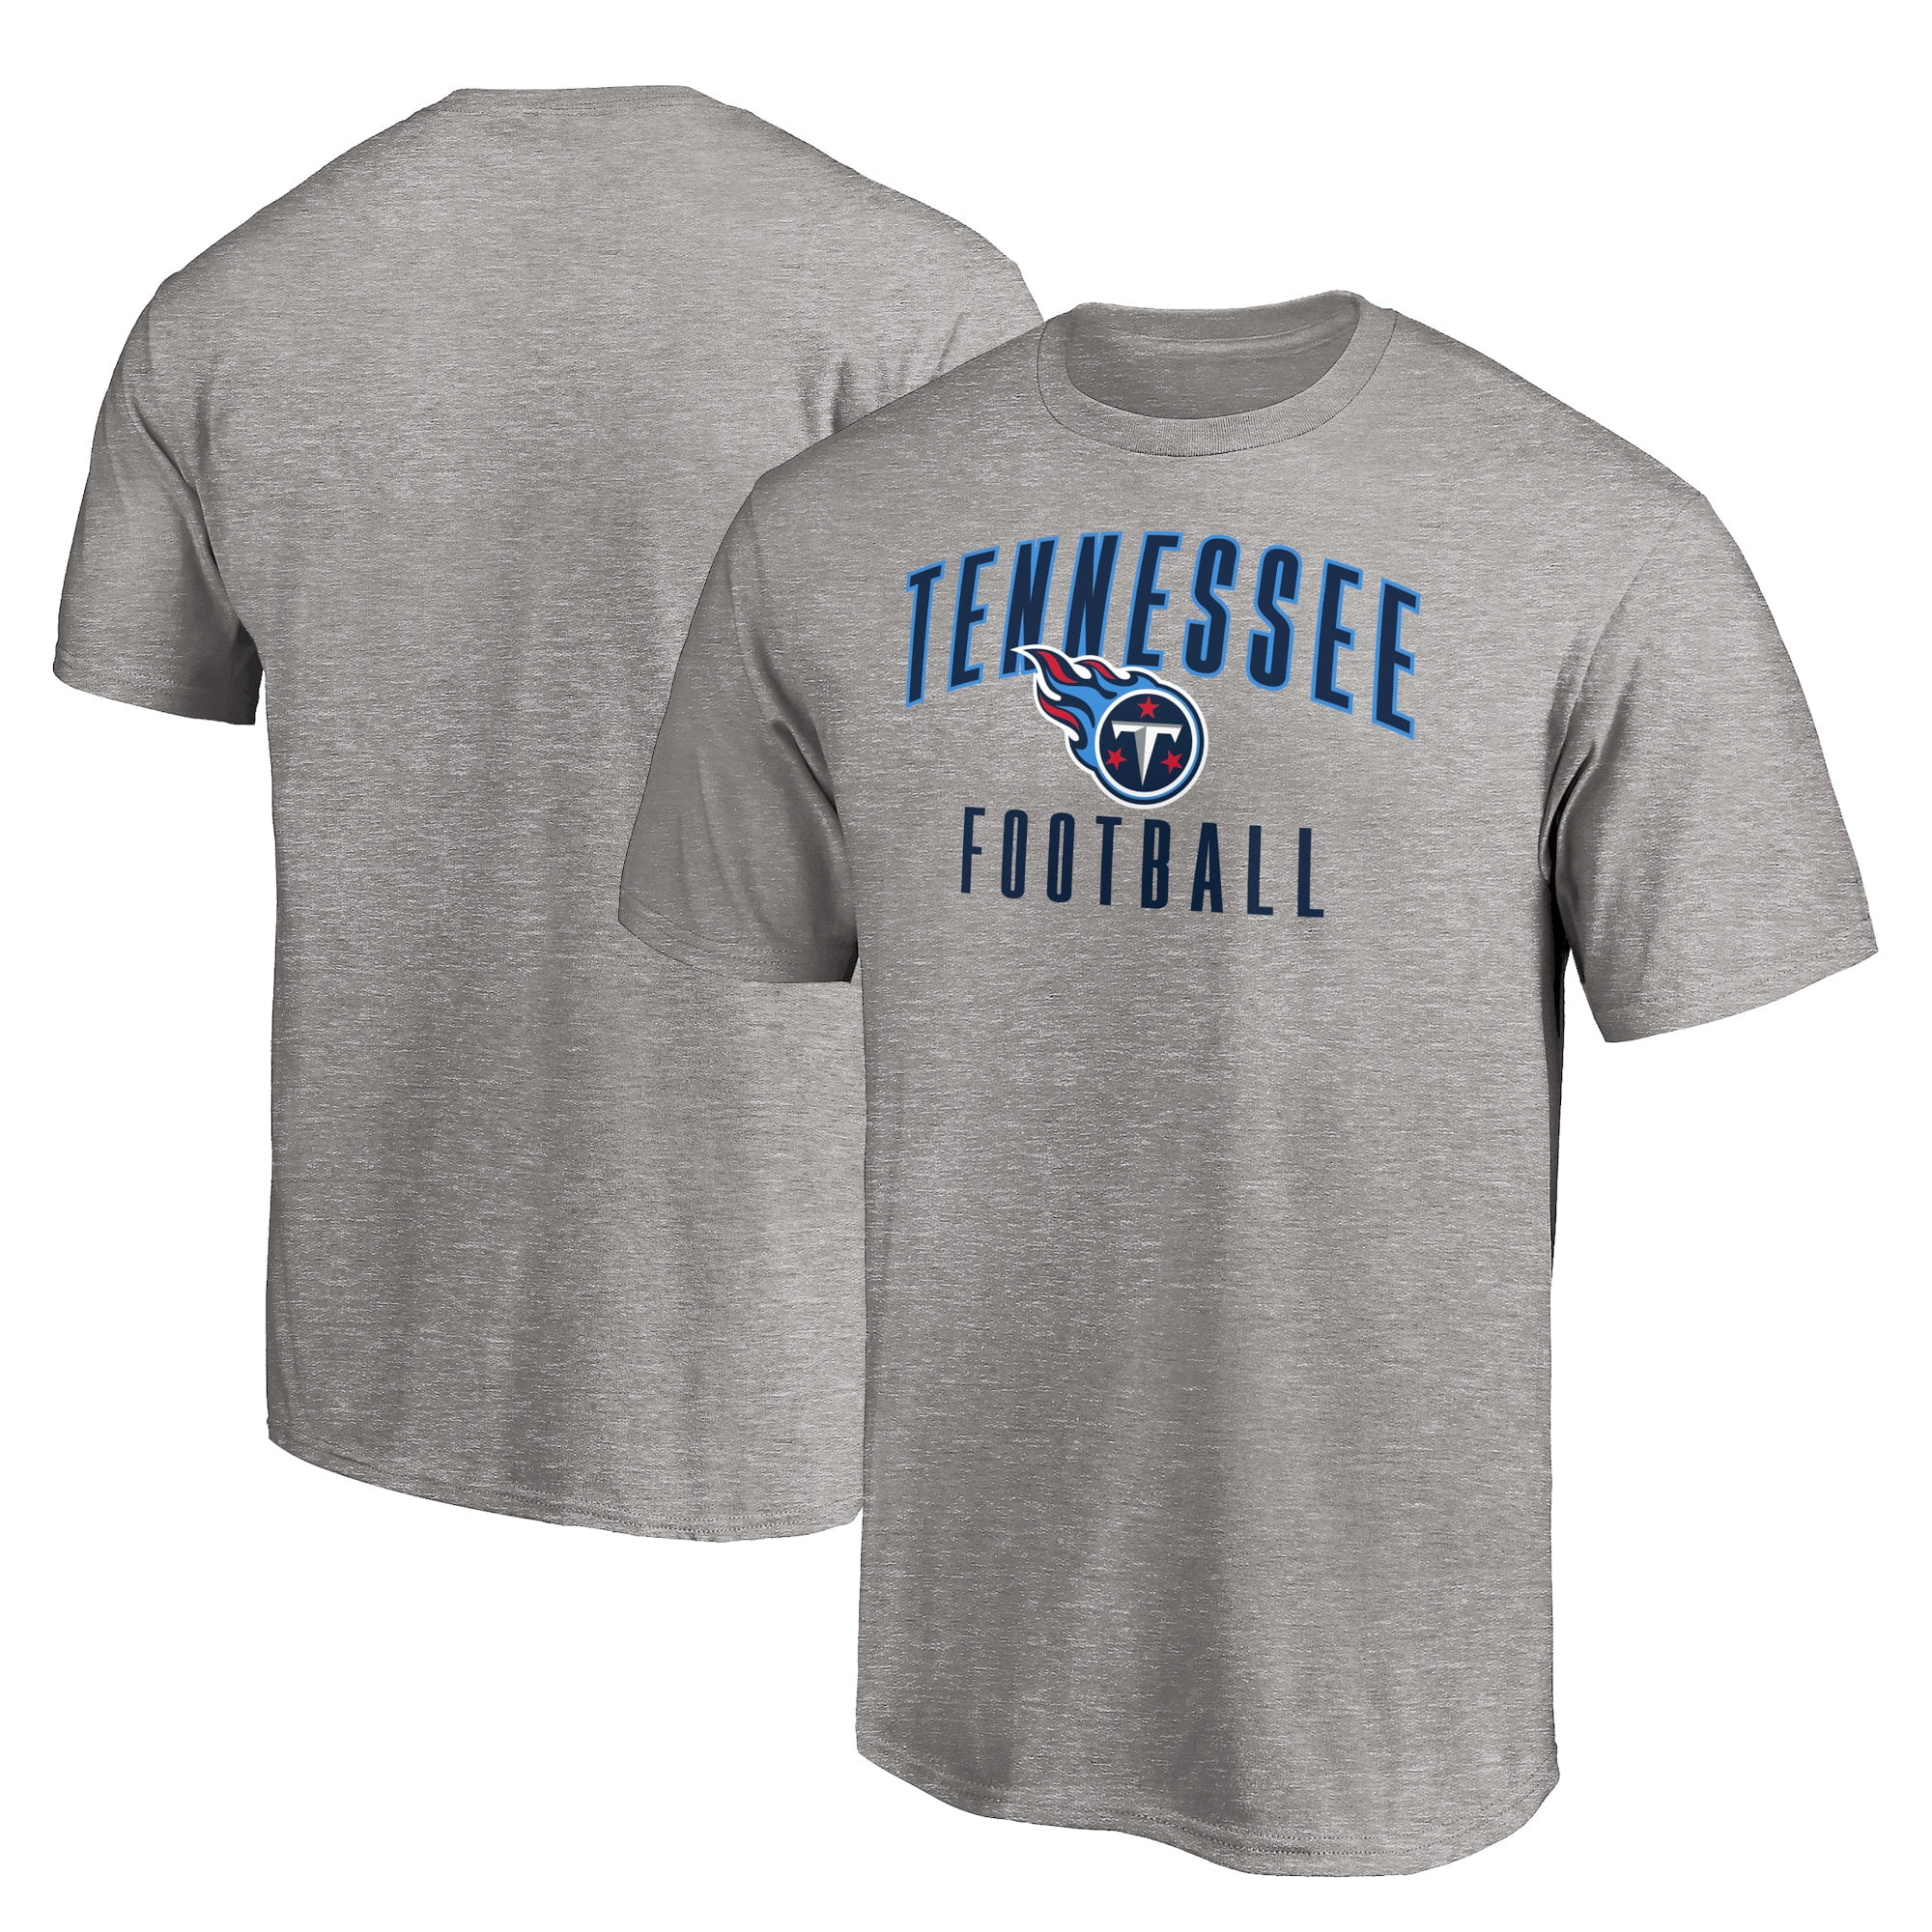 Tennessee Titans T-Shirts - Walmart.com